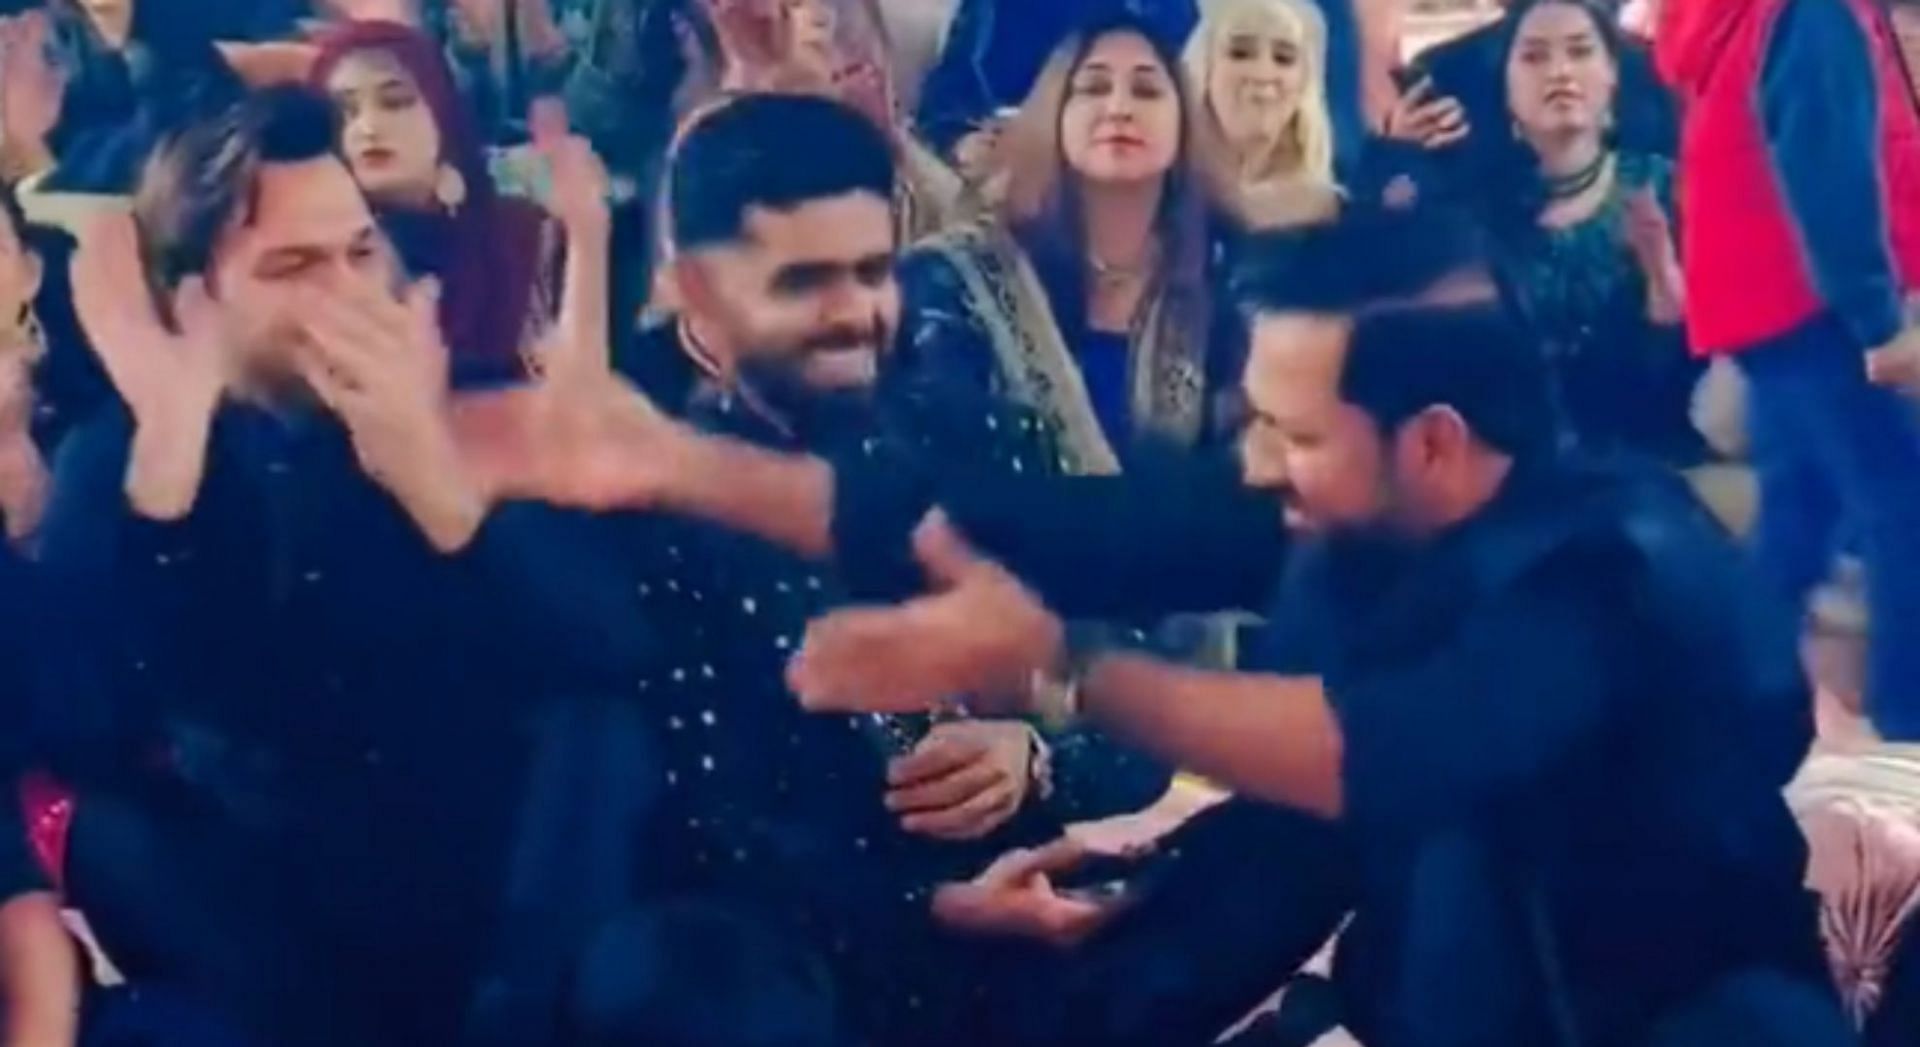 [Watch] Babar Azam and Sarfaraz Ahmed enjoy Qawwali night ahead of Imam-ul-Haq’s wedding, video goes viral